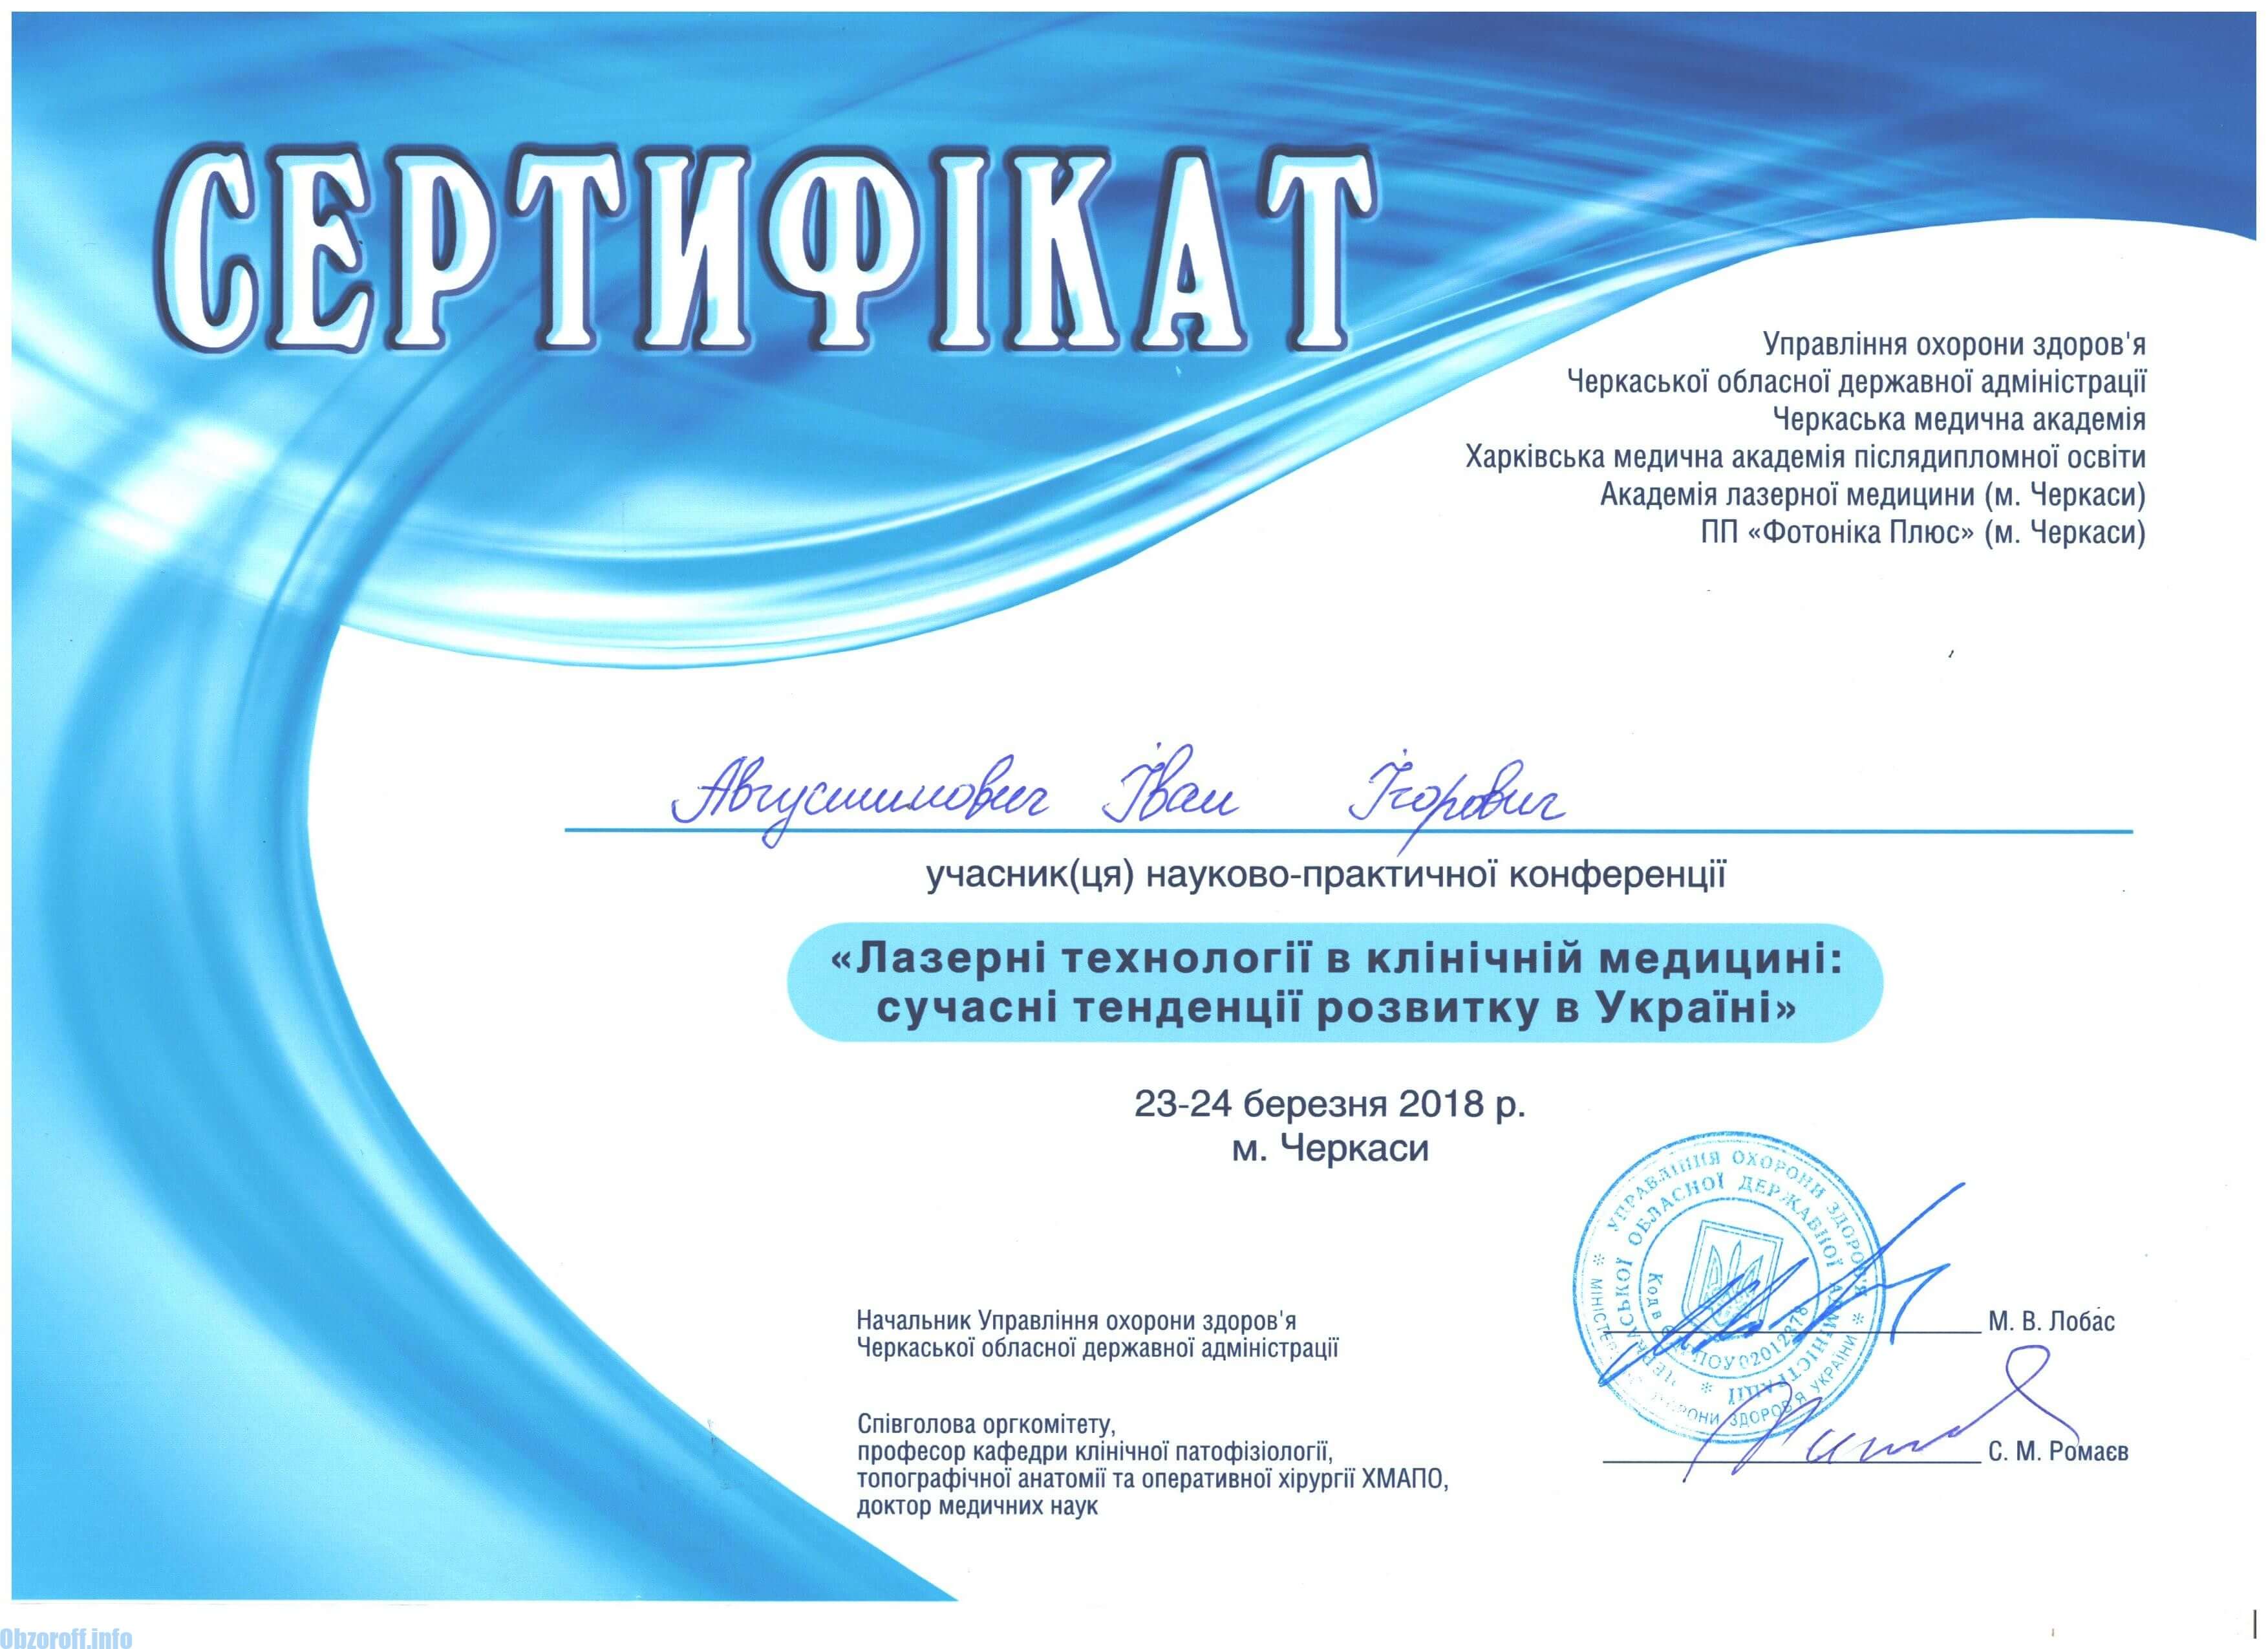 Certifikace laserové technologie v klinické medicíně